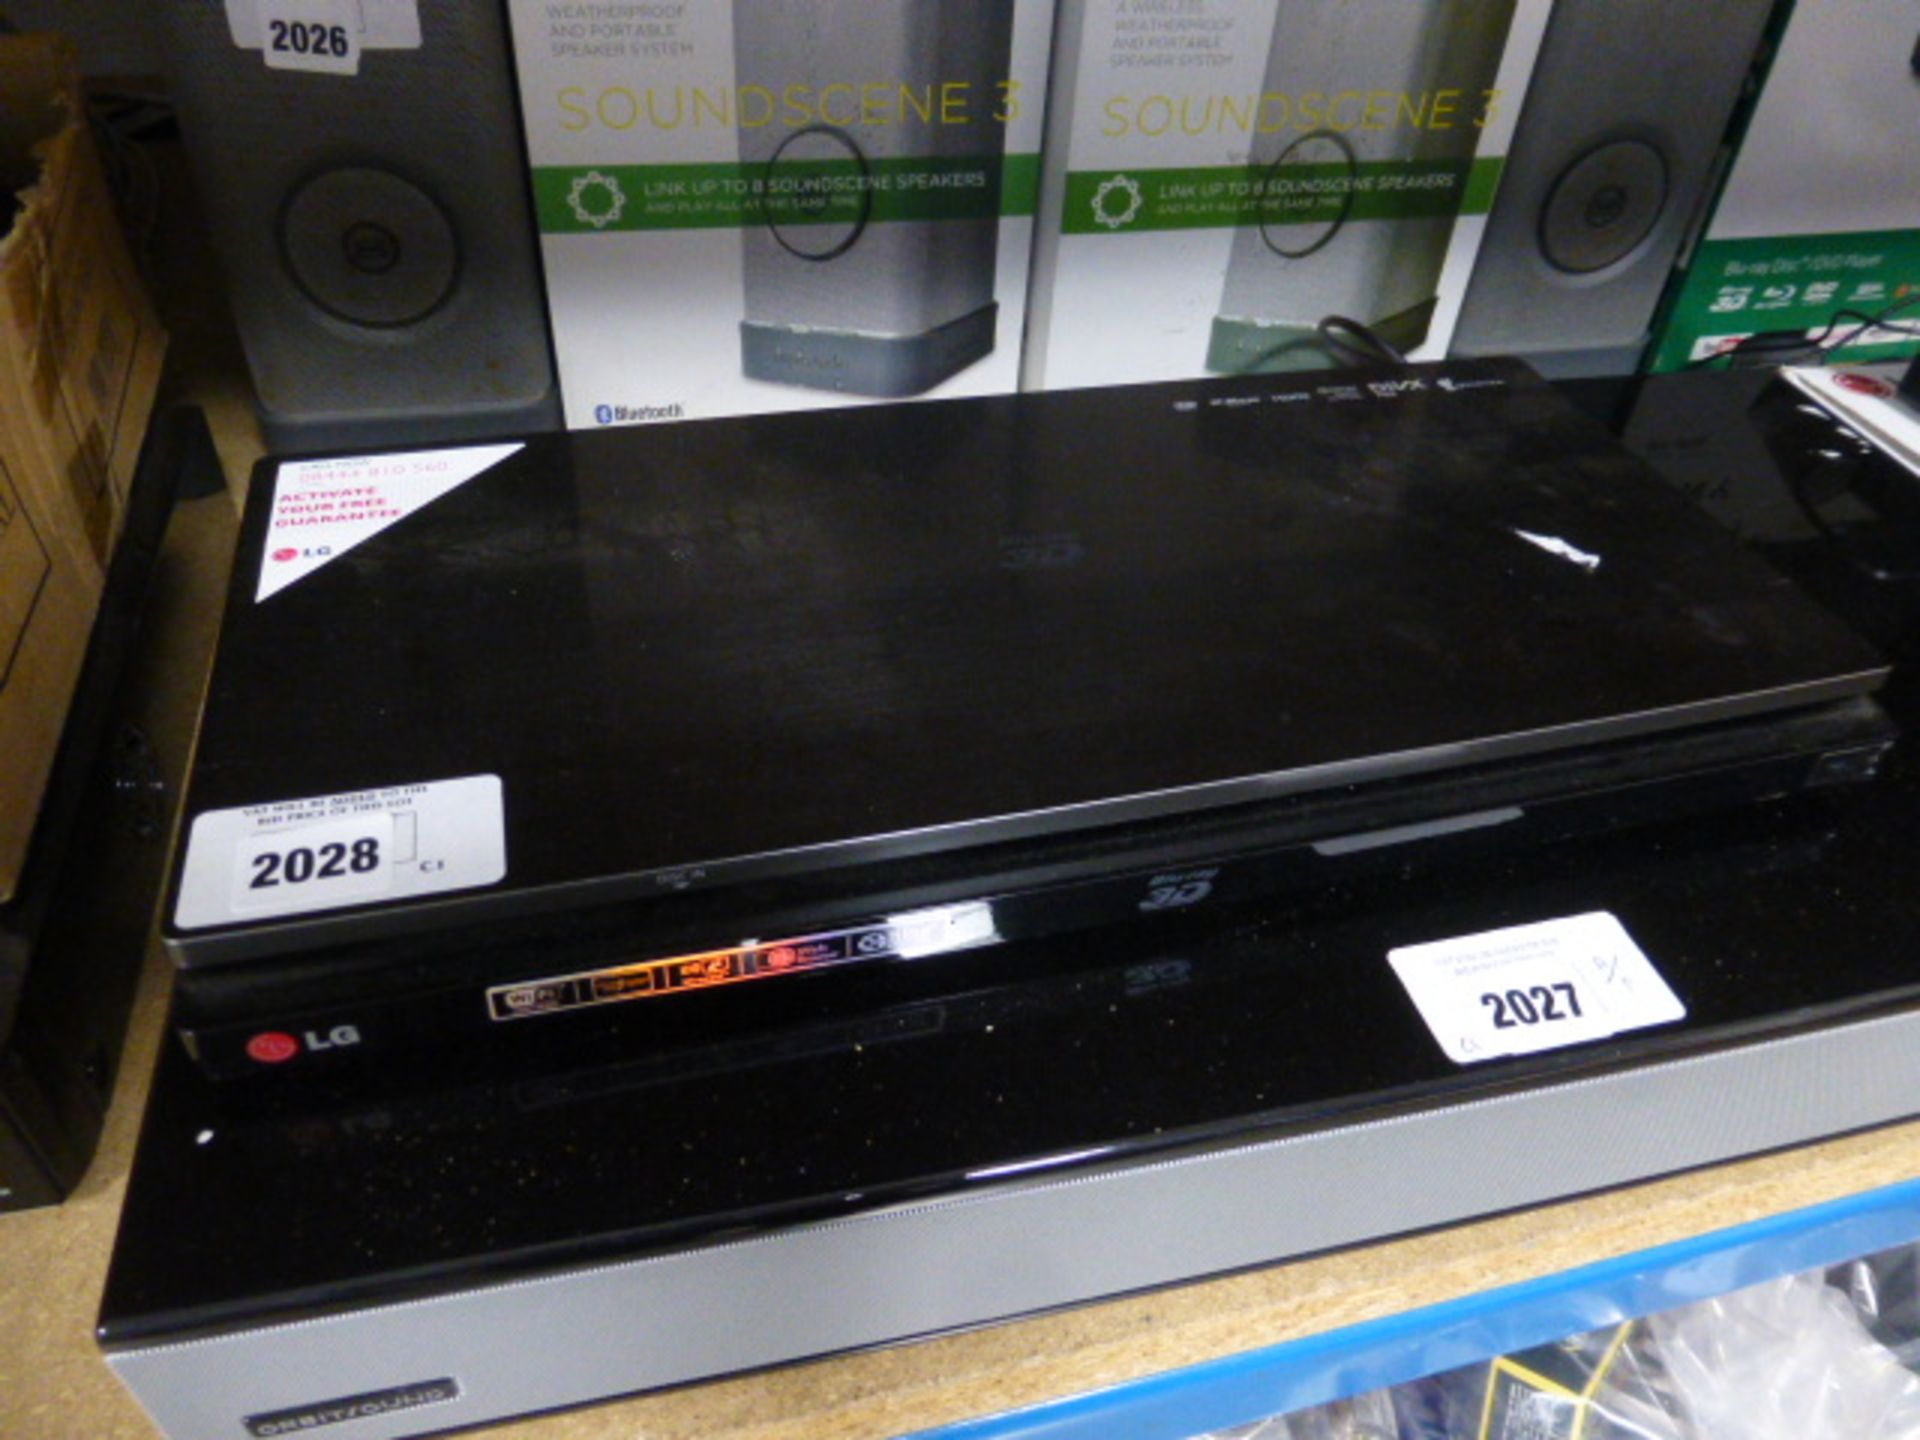 LG 3D blu-ray player model BP730